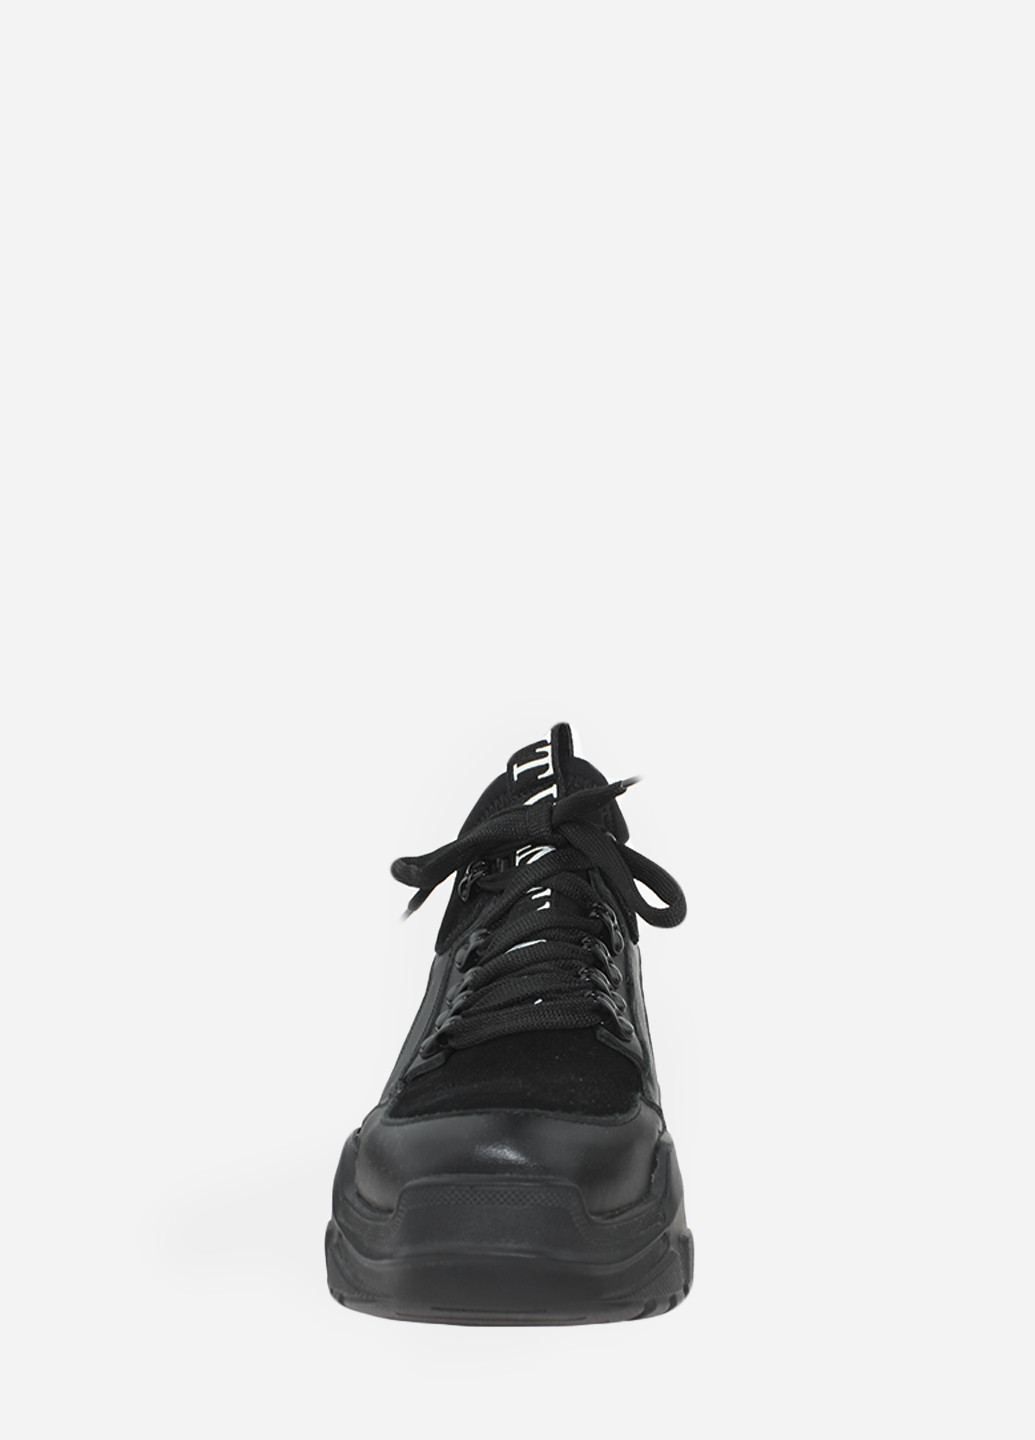 Осенние ботинки rv500 черный Vito Villini из натуральной замши